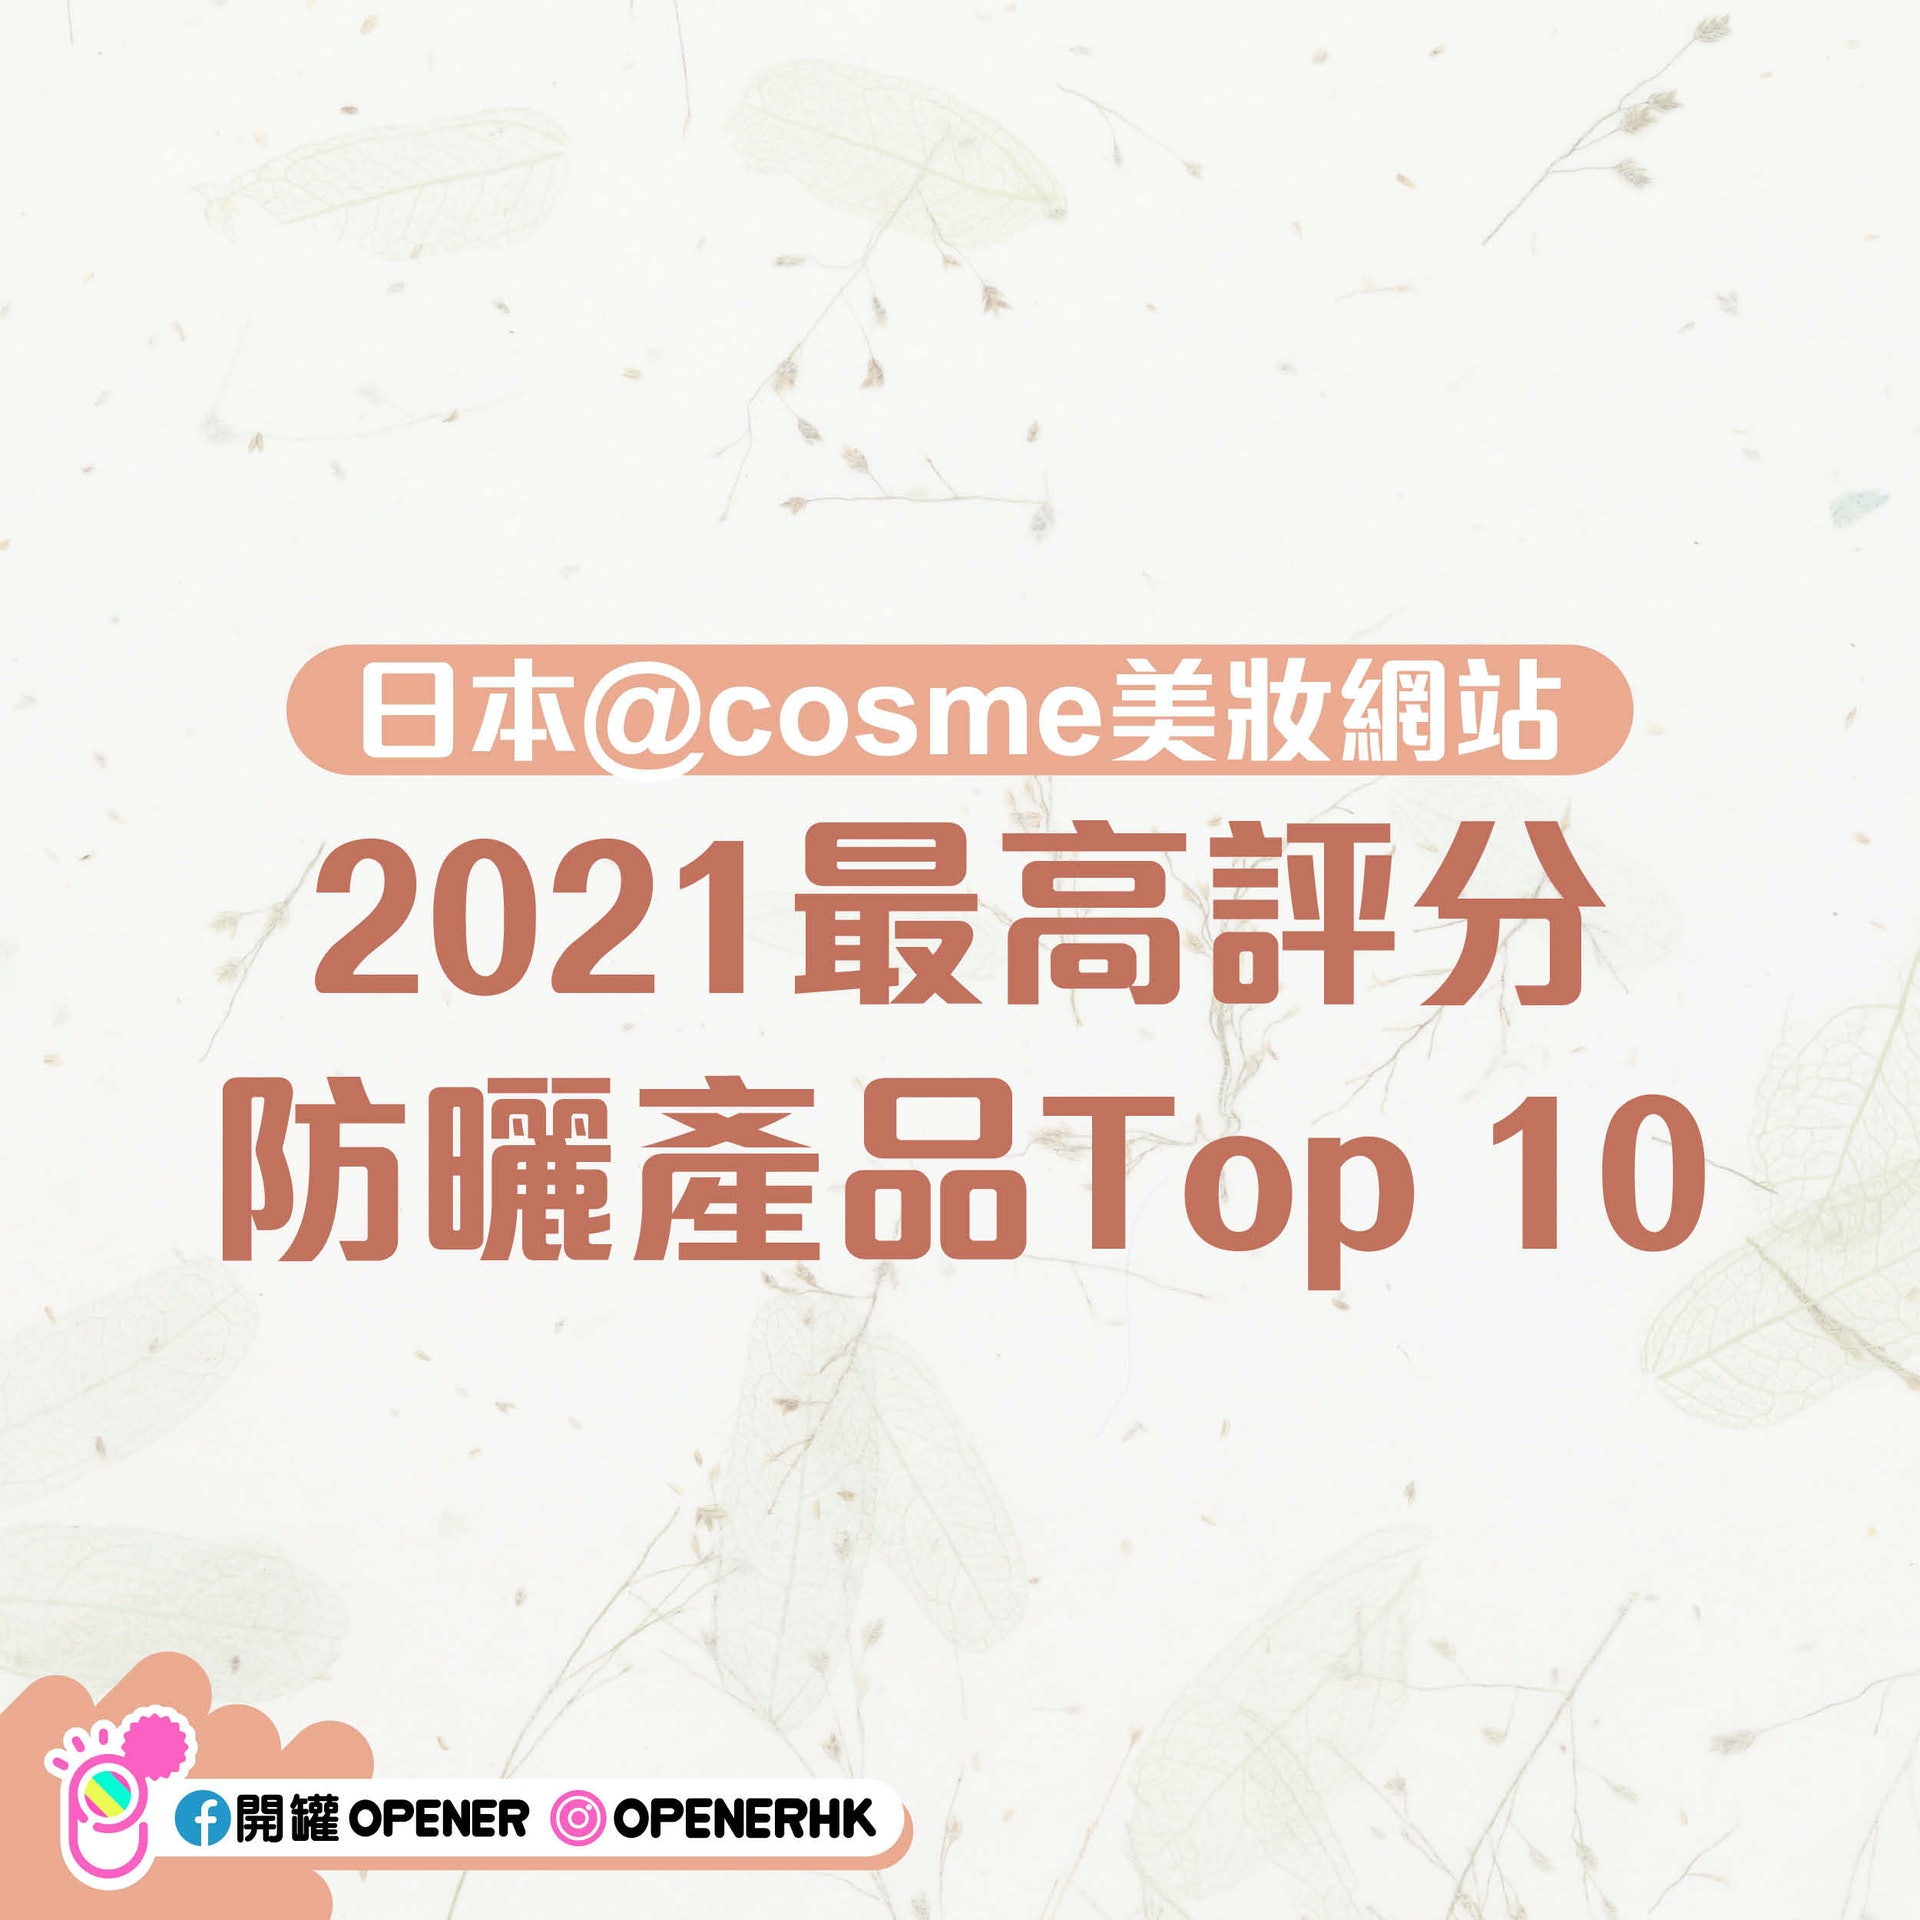 日本美妝網站@cosme 防曬產品Top 10。